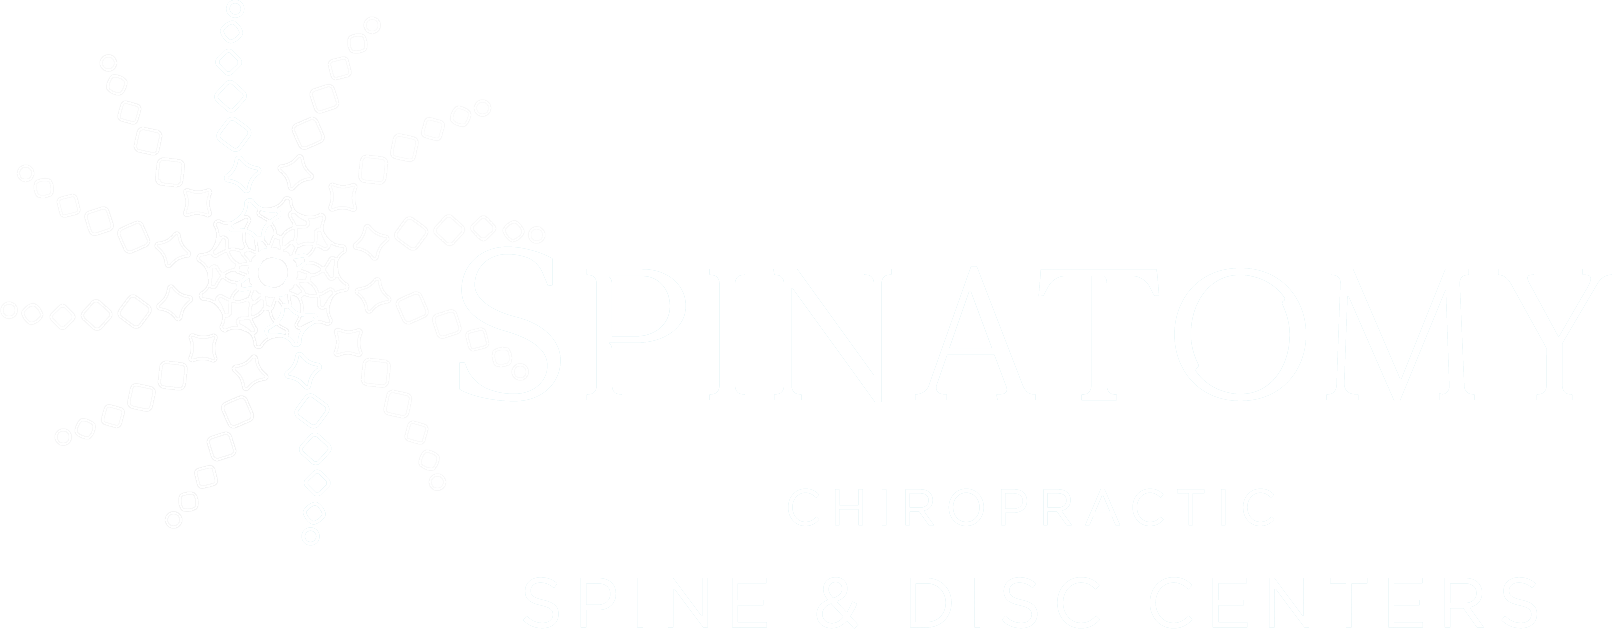 Spinatomy logo - spine surgery alternative practice in Van Nuys, Culver City & Ontario, CA